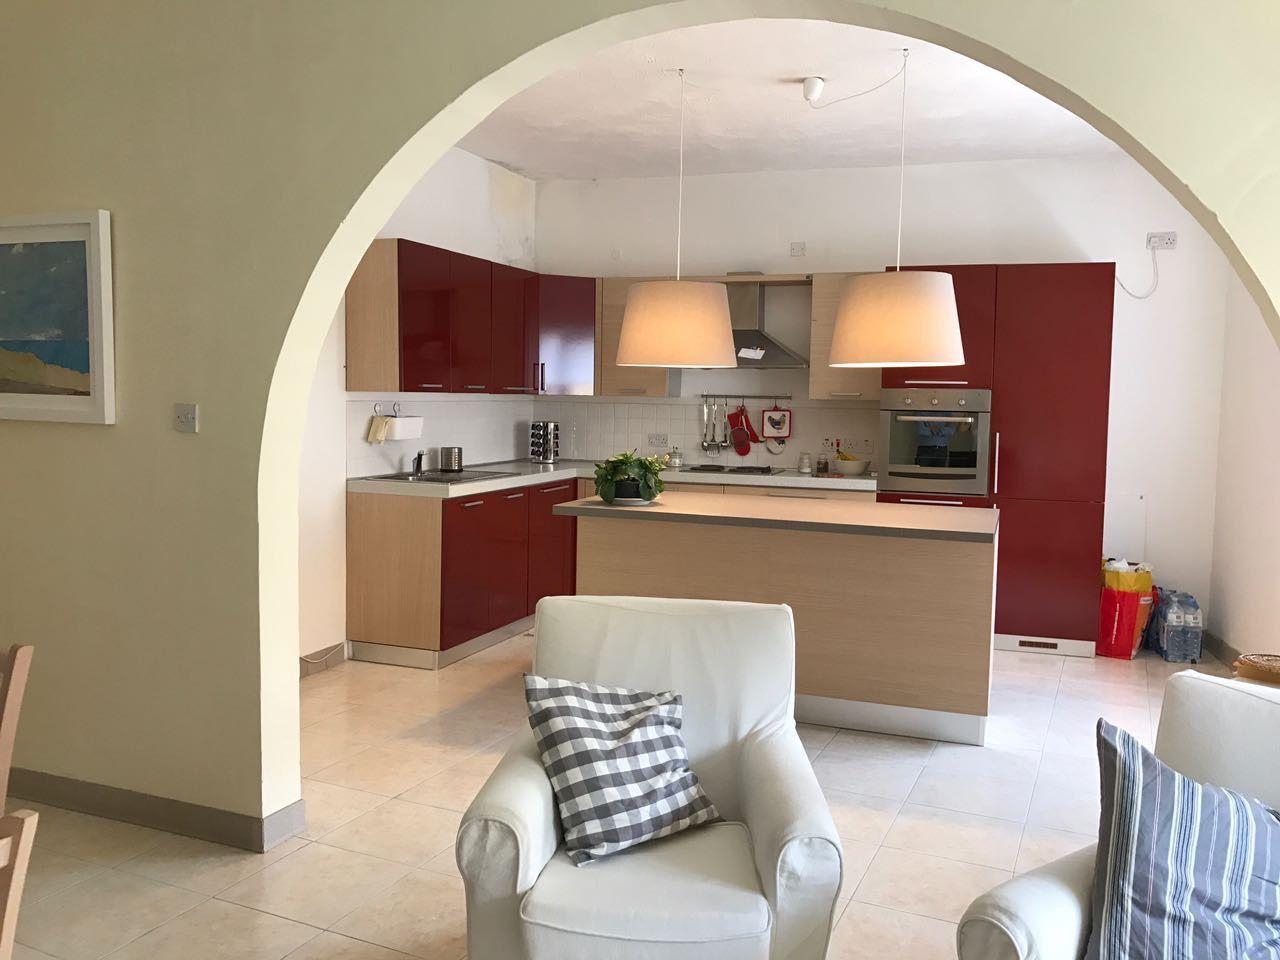 Ferienwohnung für 4 Personen ca. 130 m²  Ferienwohnung in Malta